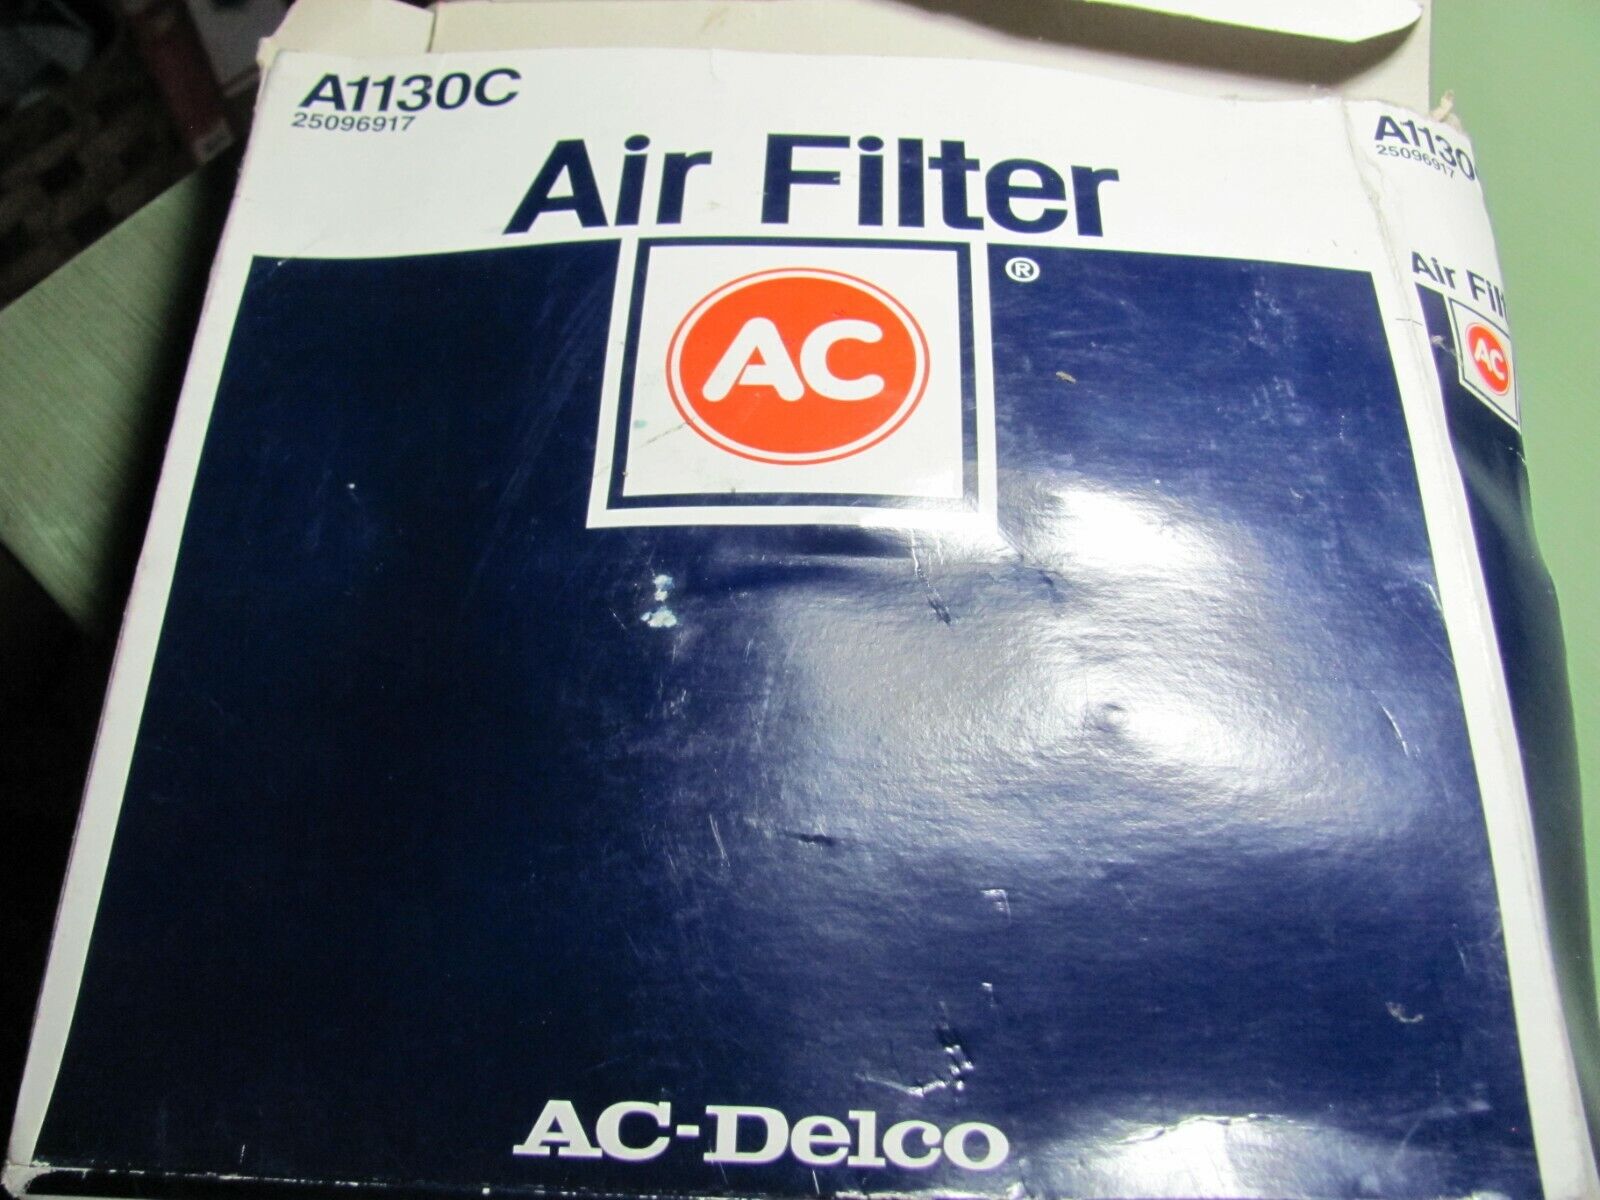 NOS AC Air Filter A1130C GM 25096917 Air Filter 1985-89 Spectrum 1.5L 4 Cylinder